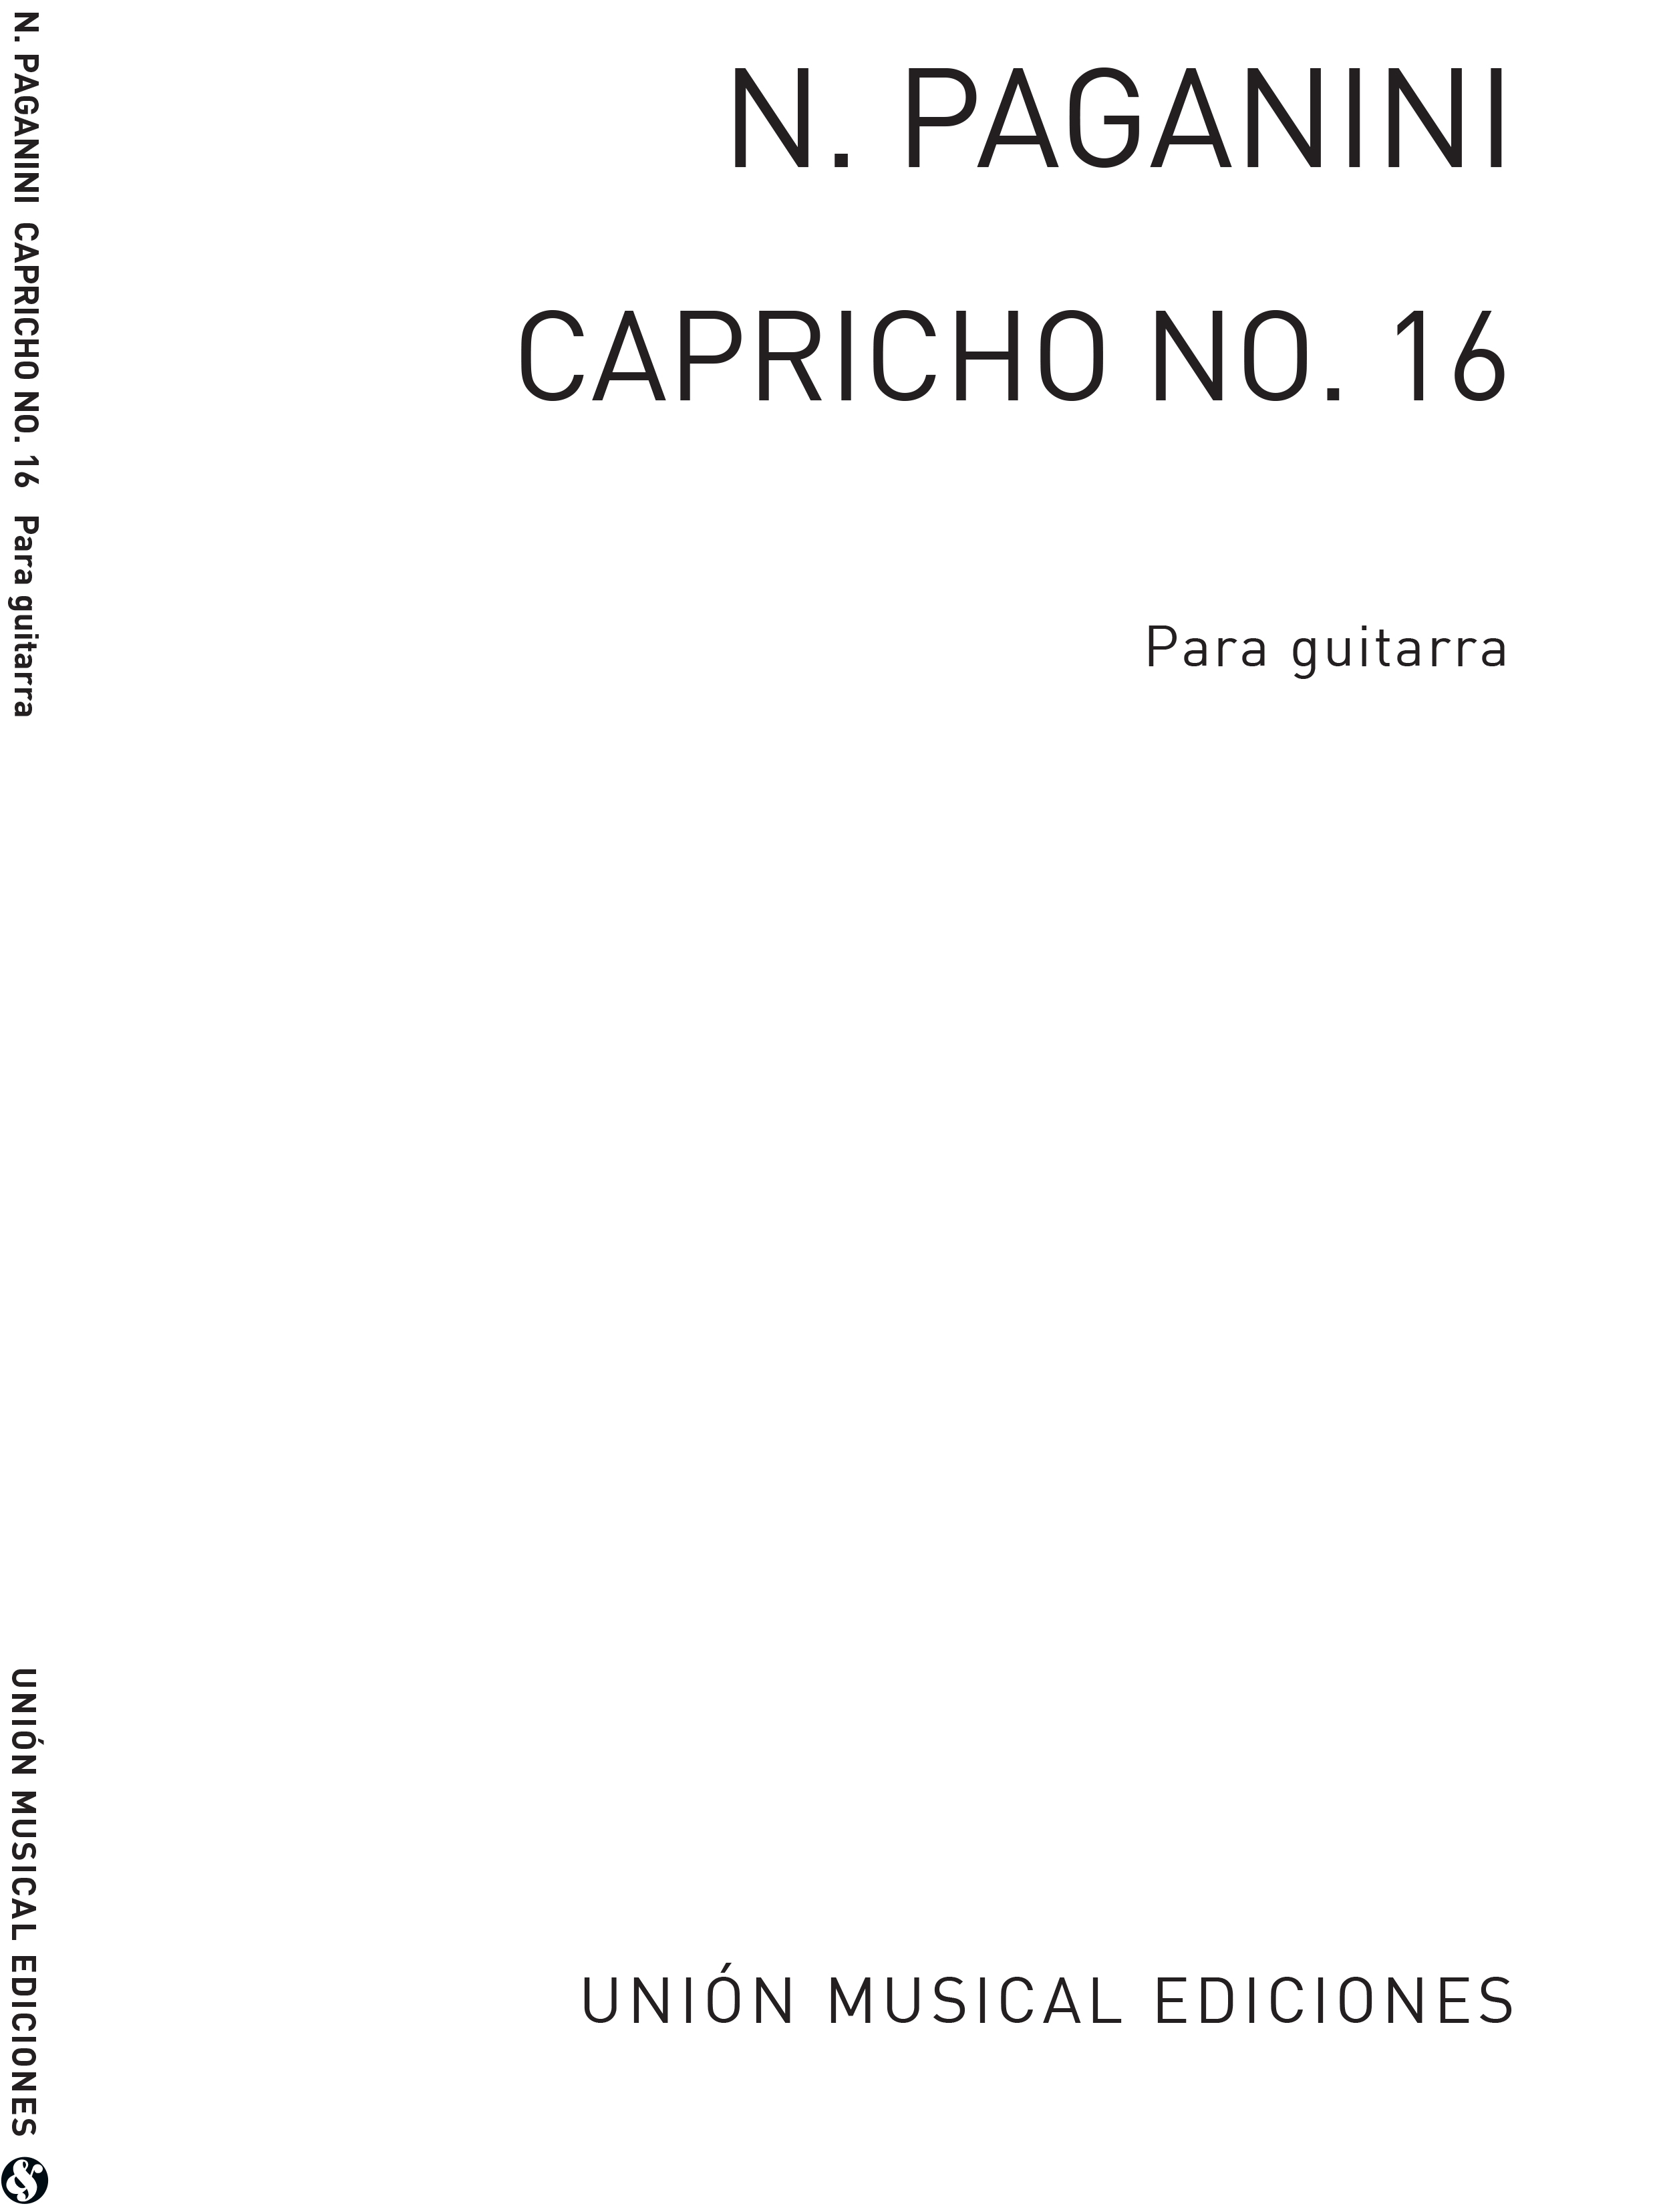 Niccolo Paganini: Caprice No.16 For Guitar